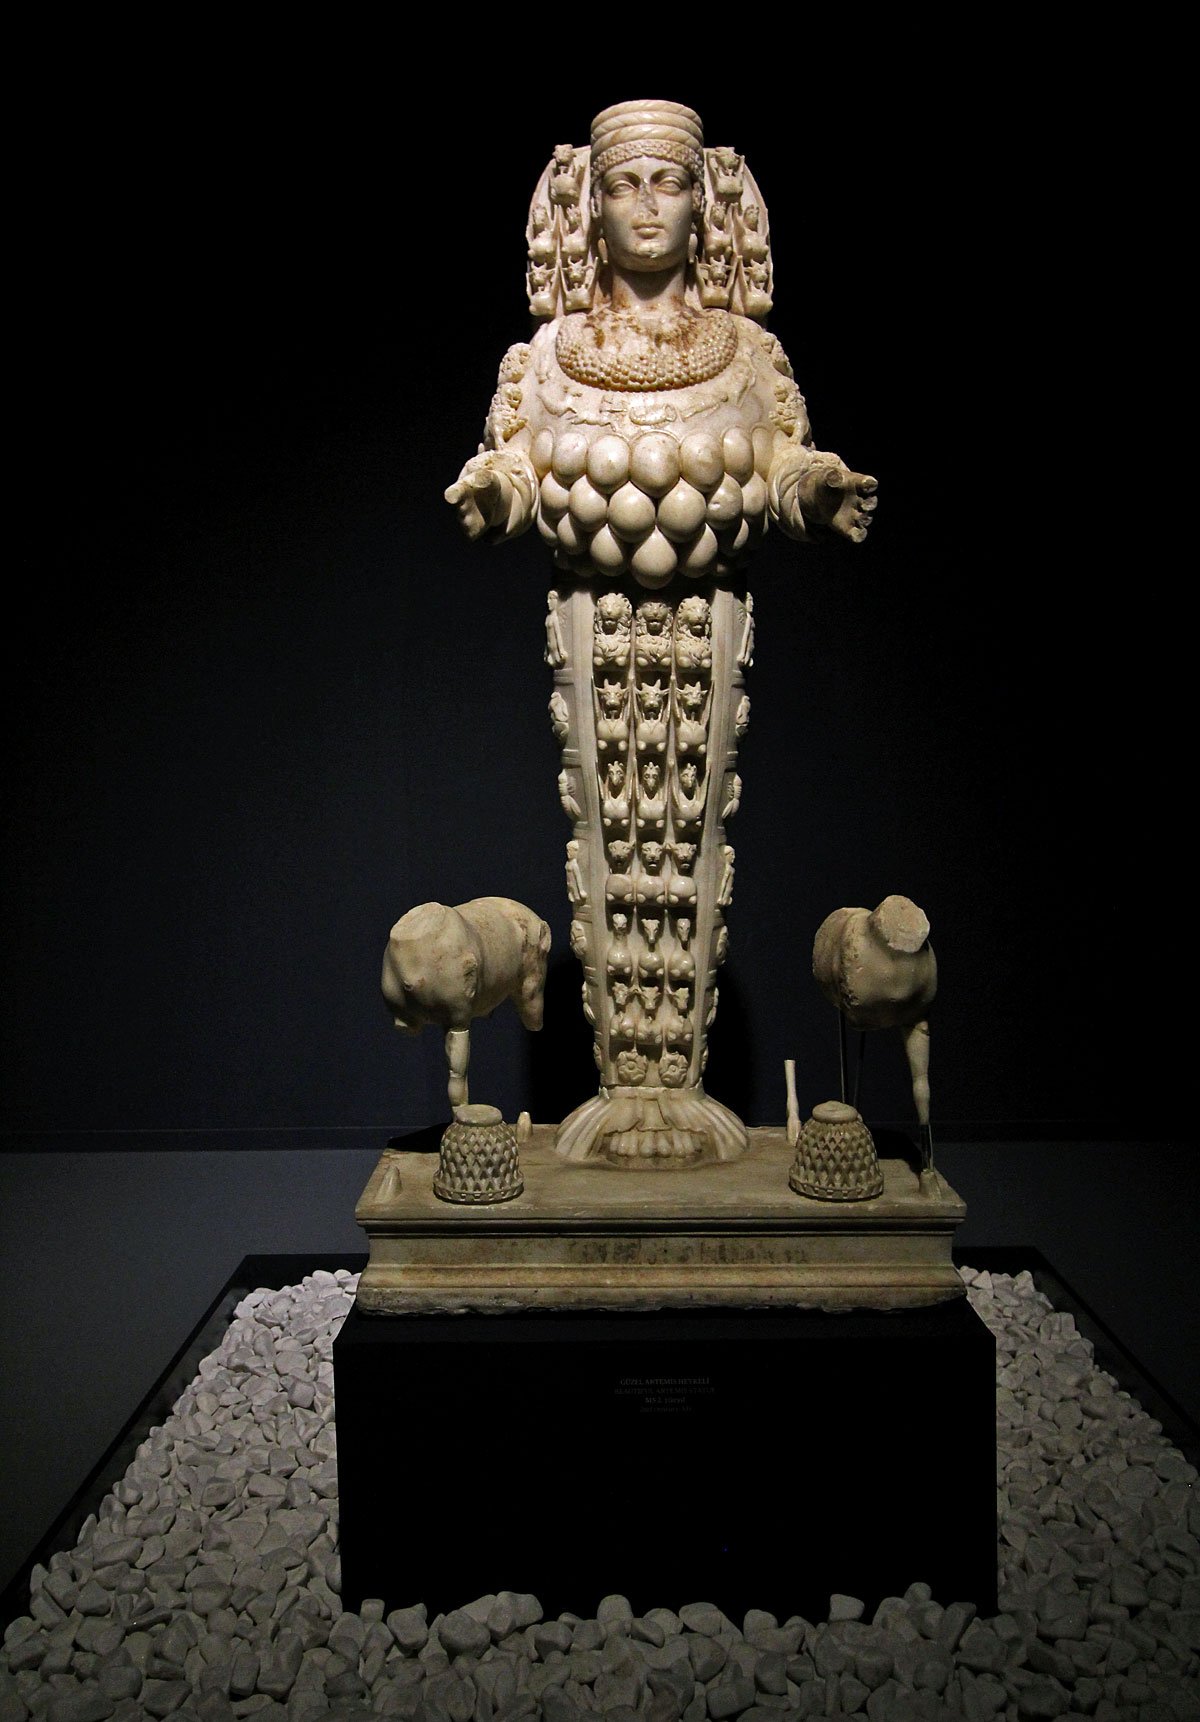 Ephesus Archaeological Museum, Selçuk, Turkey